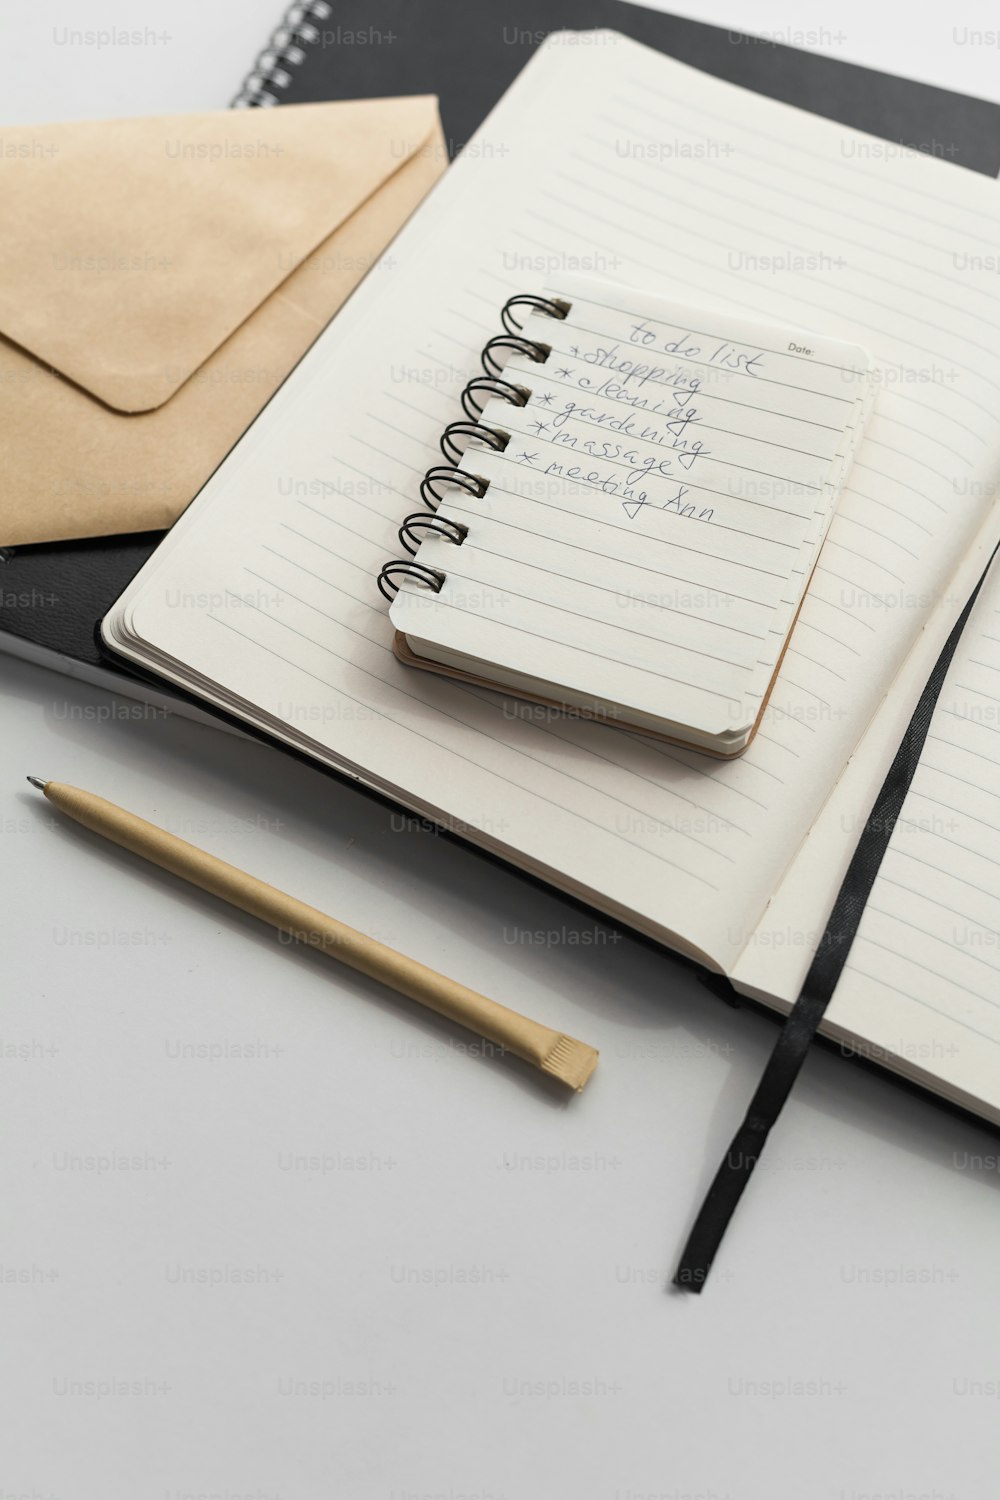 un cuaderno con un bloc de notas y un bolígrafo encima.